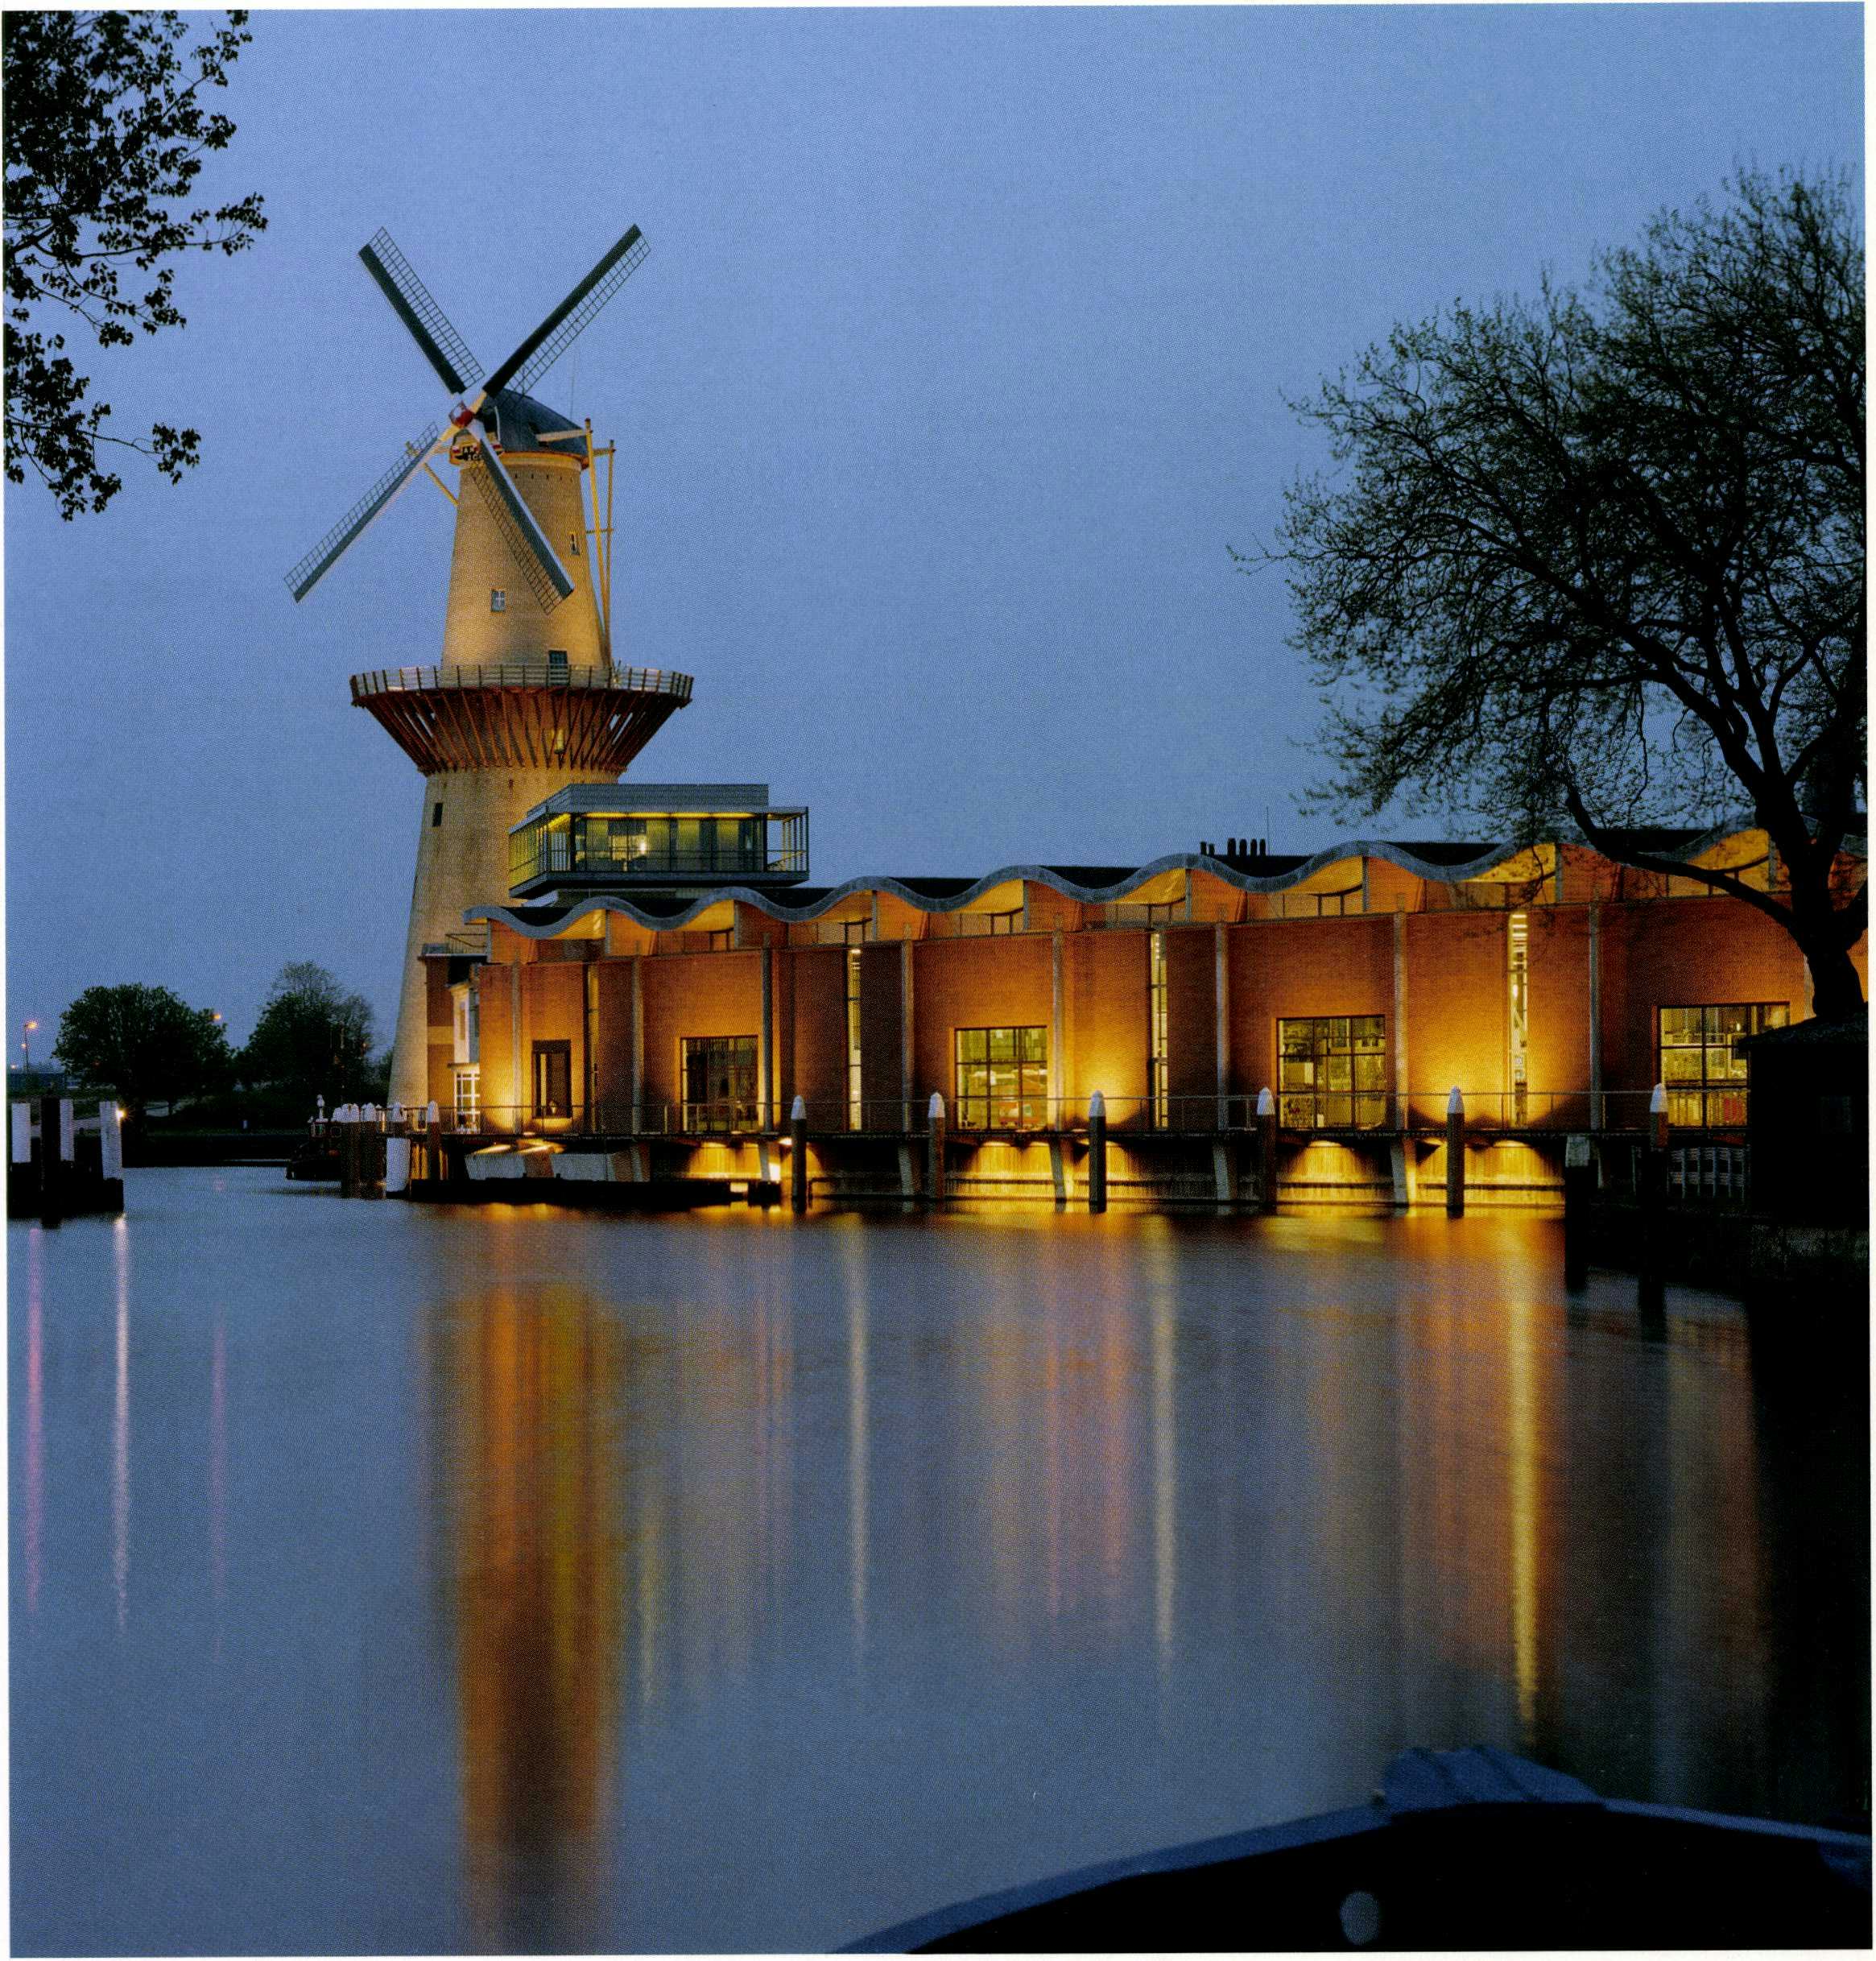 Het nieuwe bezoekerscentrum is uitgevoerd als een replica van een klassiek Schiedamse stellingmolen - Beeld Teo Krijgsman